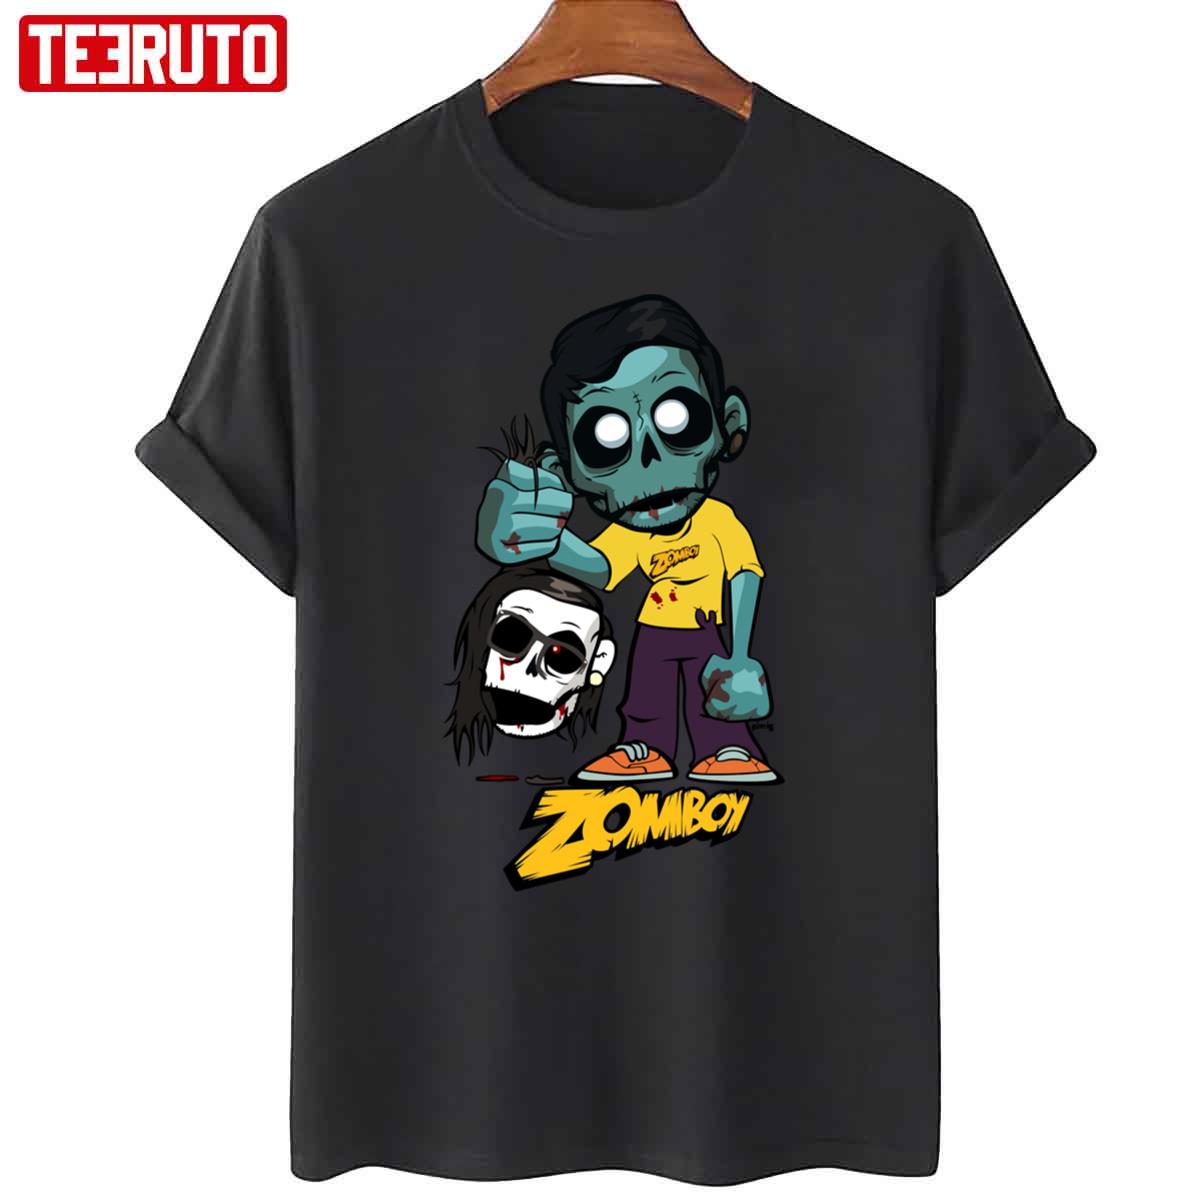 Zomboy With Skrillex Unisex T-Shirt